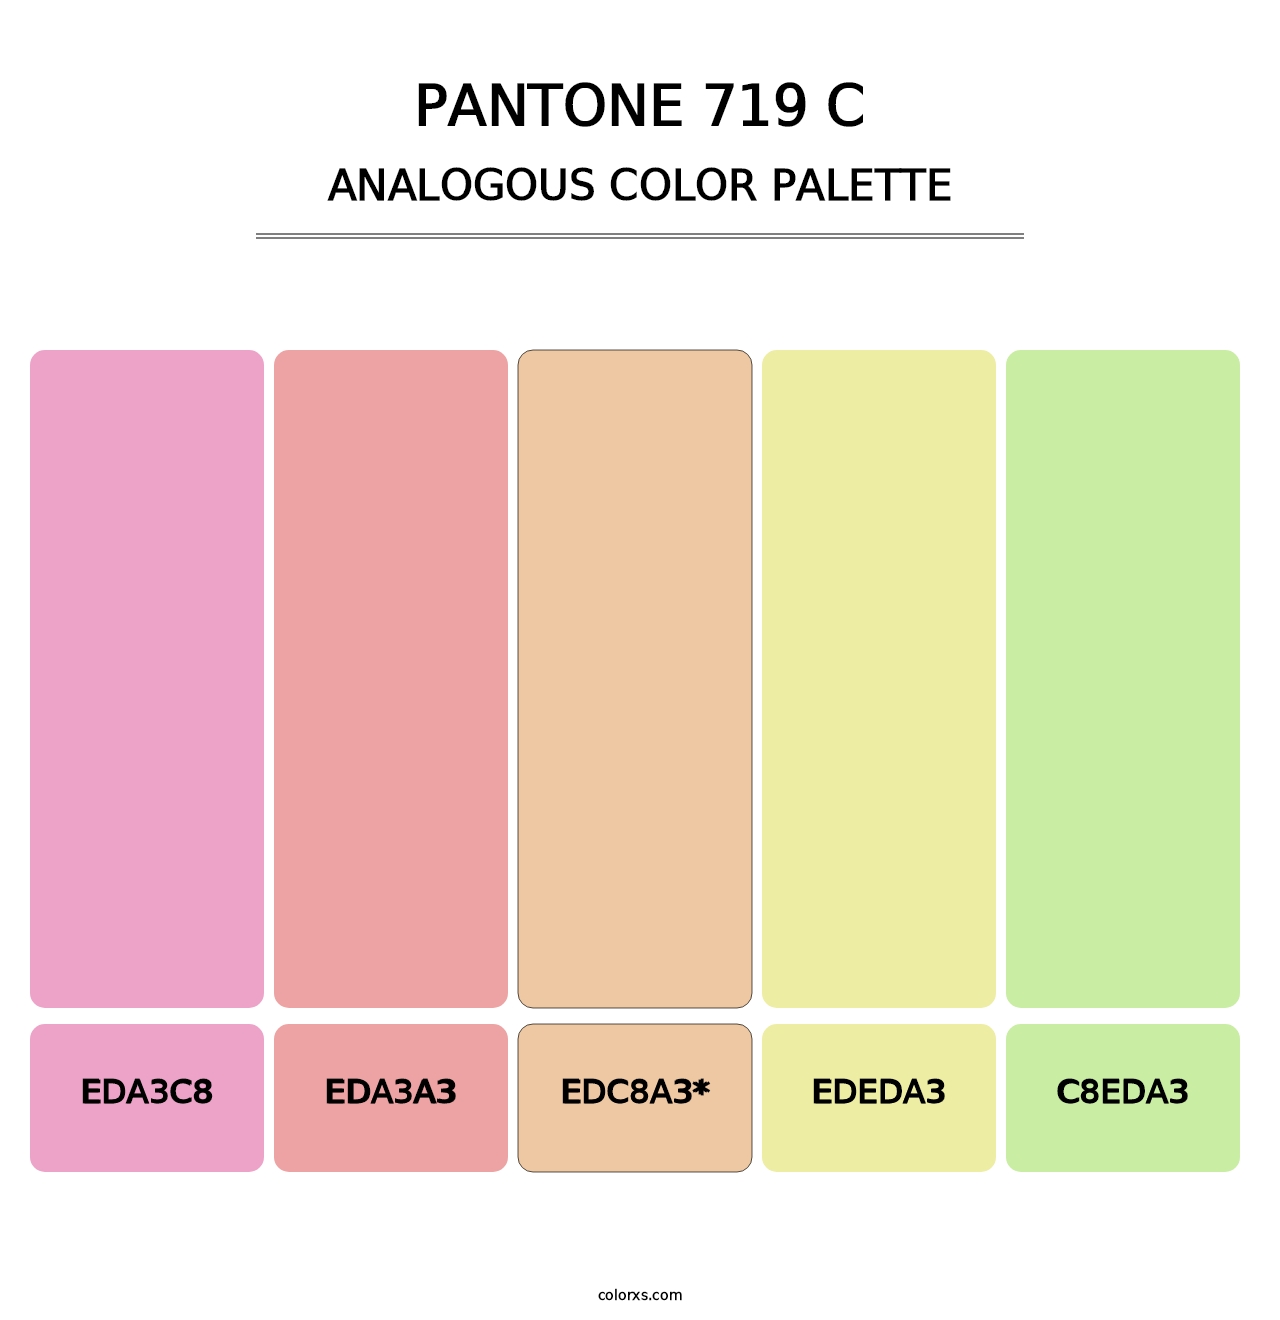 PANTONE 719 C - Analogous Color Palette